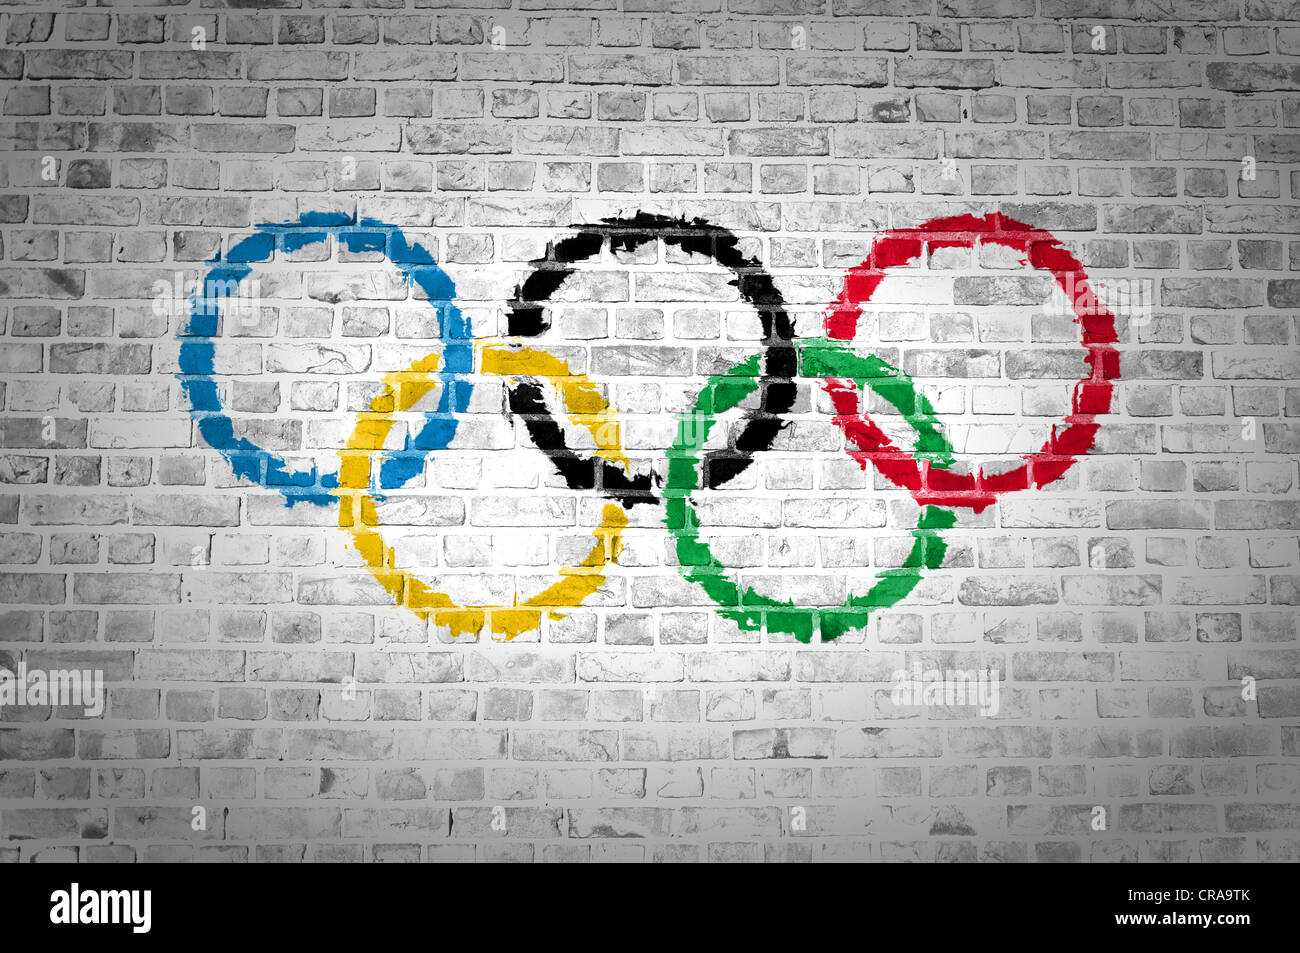 Una imagen del movimiento olímpico bandera pintada sobre una pared de ladrillos en una ubicación urbana Foto de stock